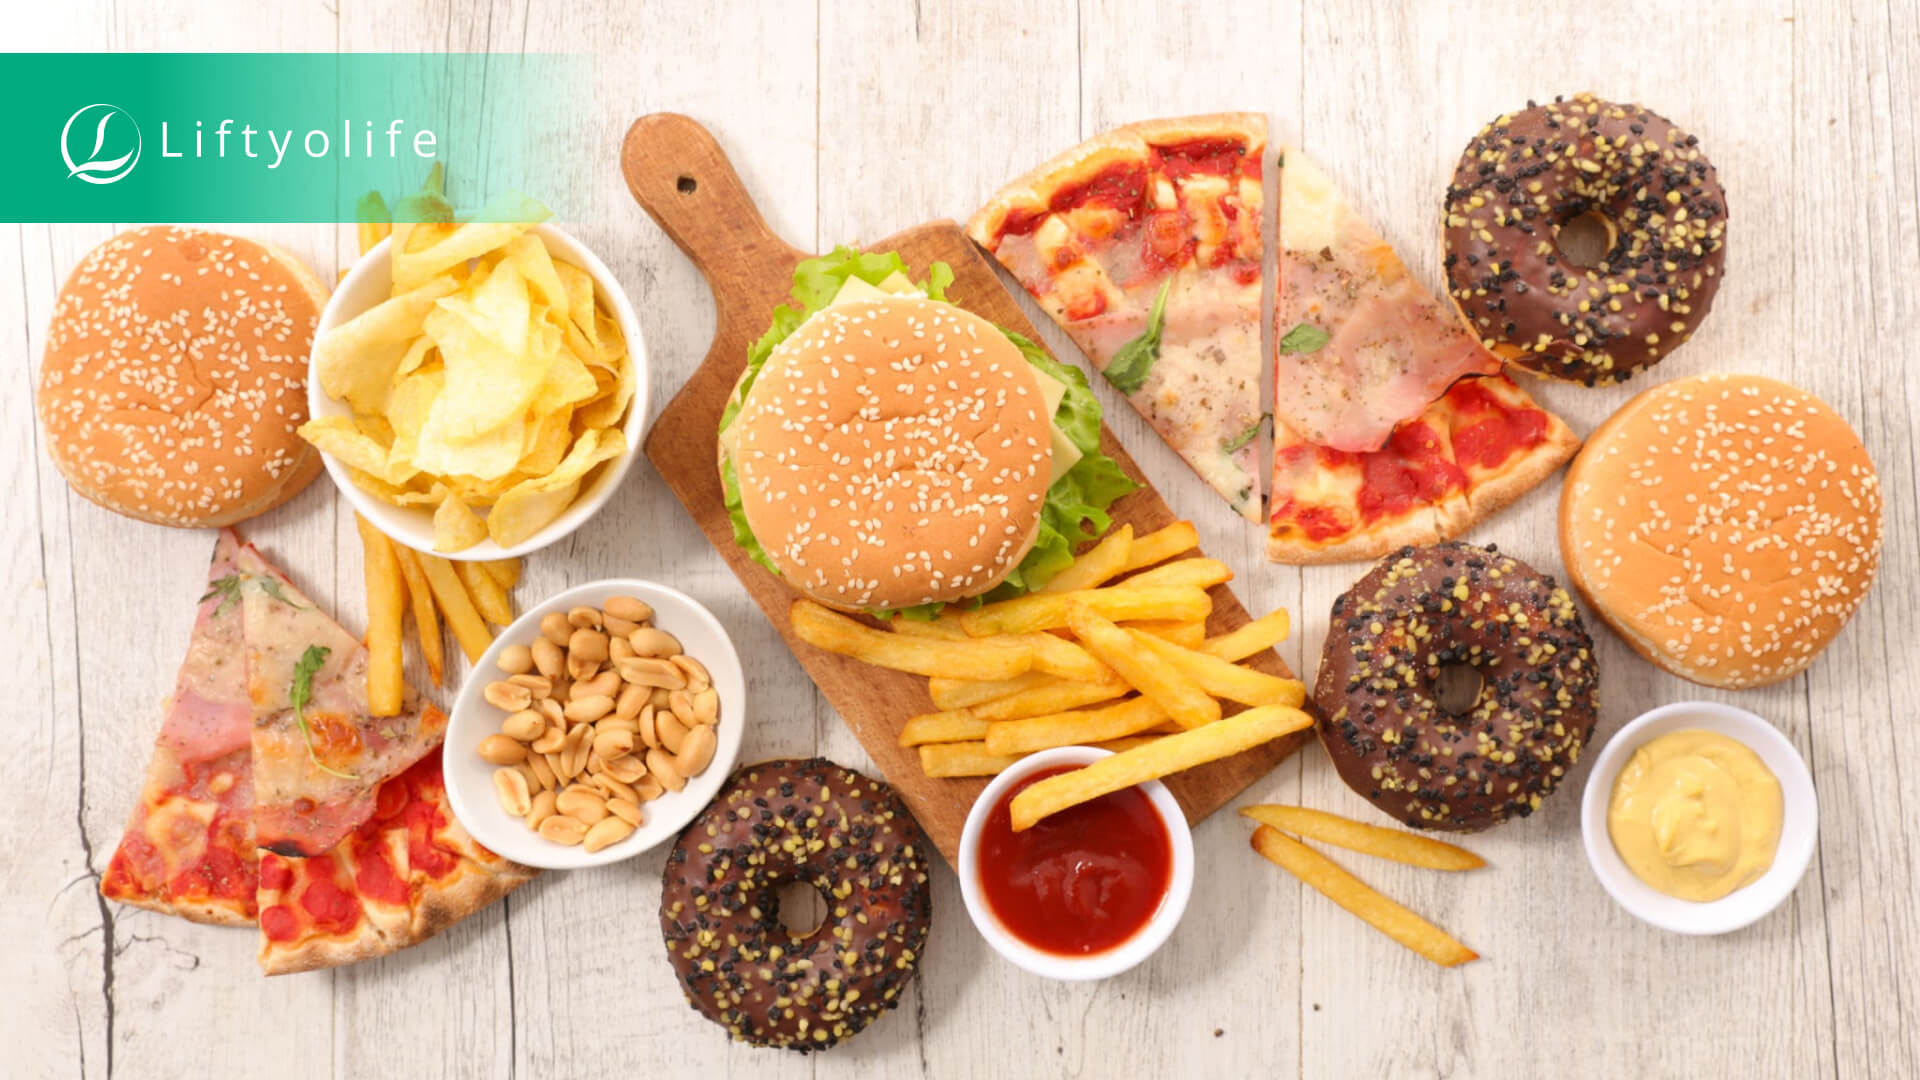 Avoid unhealthy foods